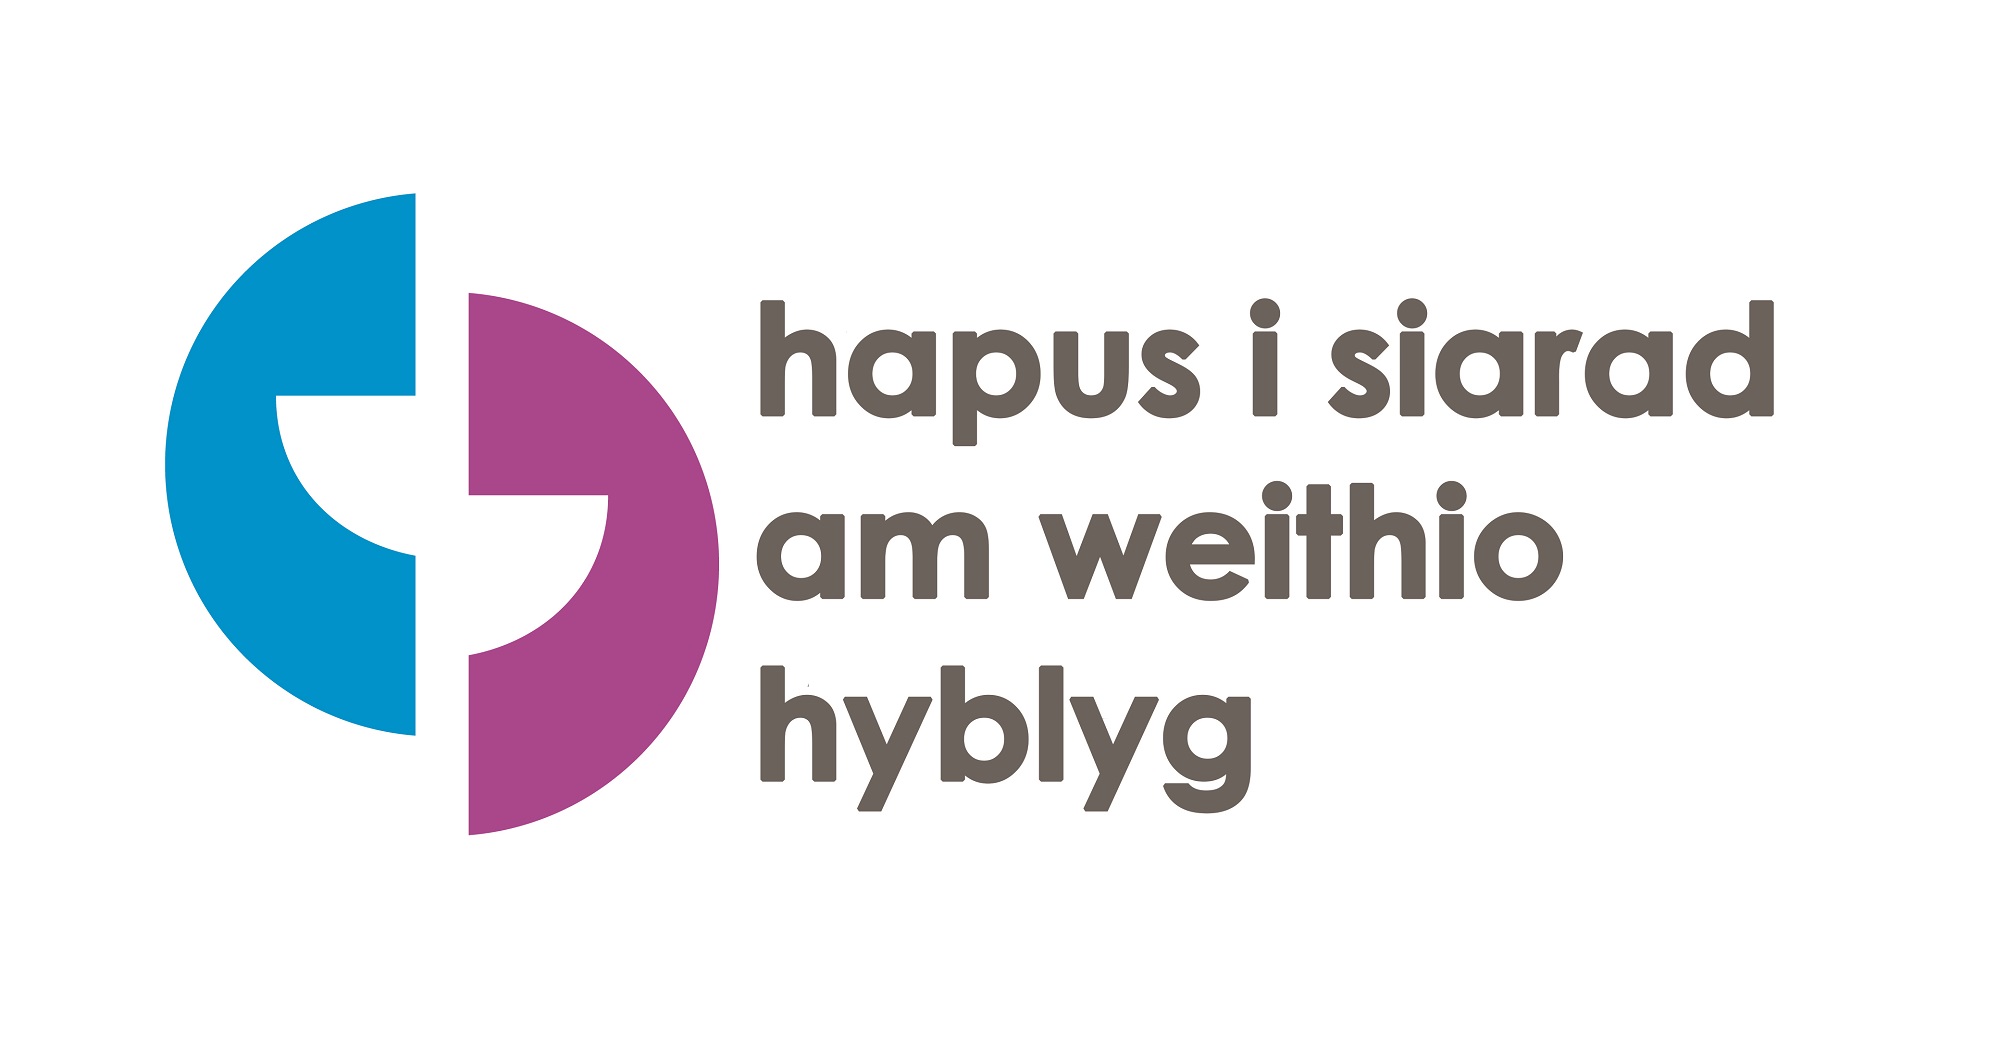 Hapus i siarad am weithio hyblyg logo